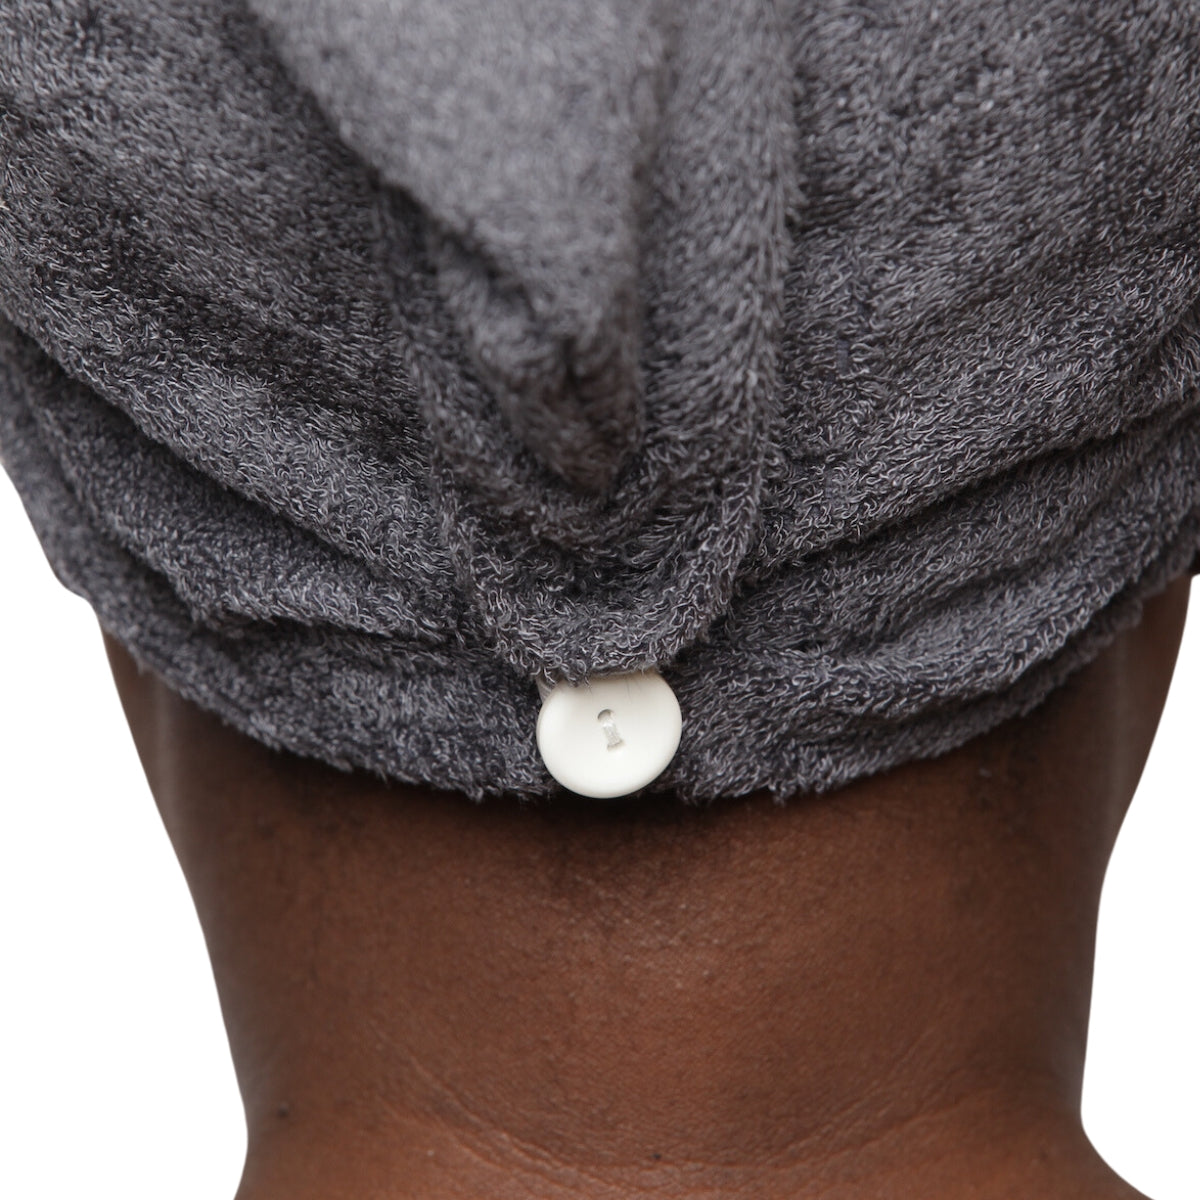 La serviette micro-fibres, un indispensable de votre routine capillaire pour sécher en douceur vos cheveux bouclés/crépus. Fabriquée à la main. Coton bio OEKO-TEX.